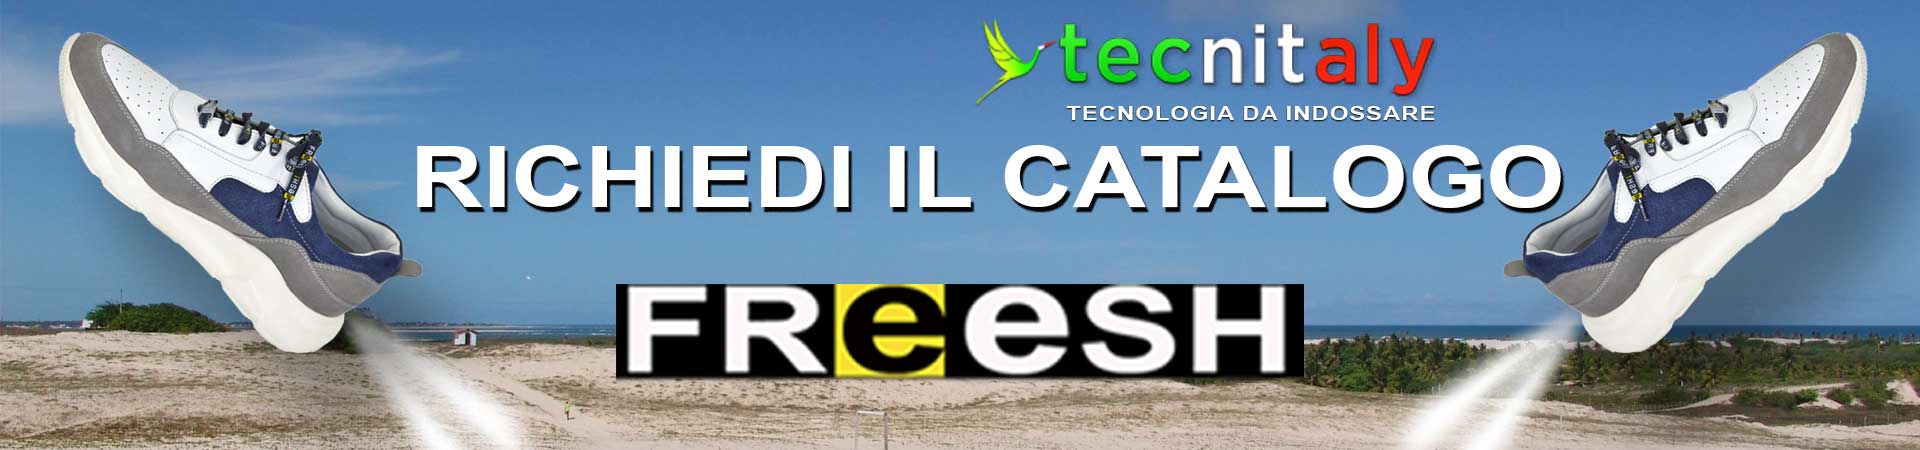 freesh-richiedi-il-catalogo-1